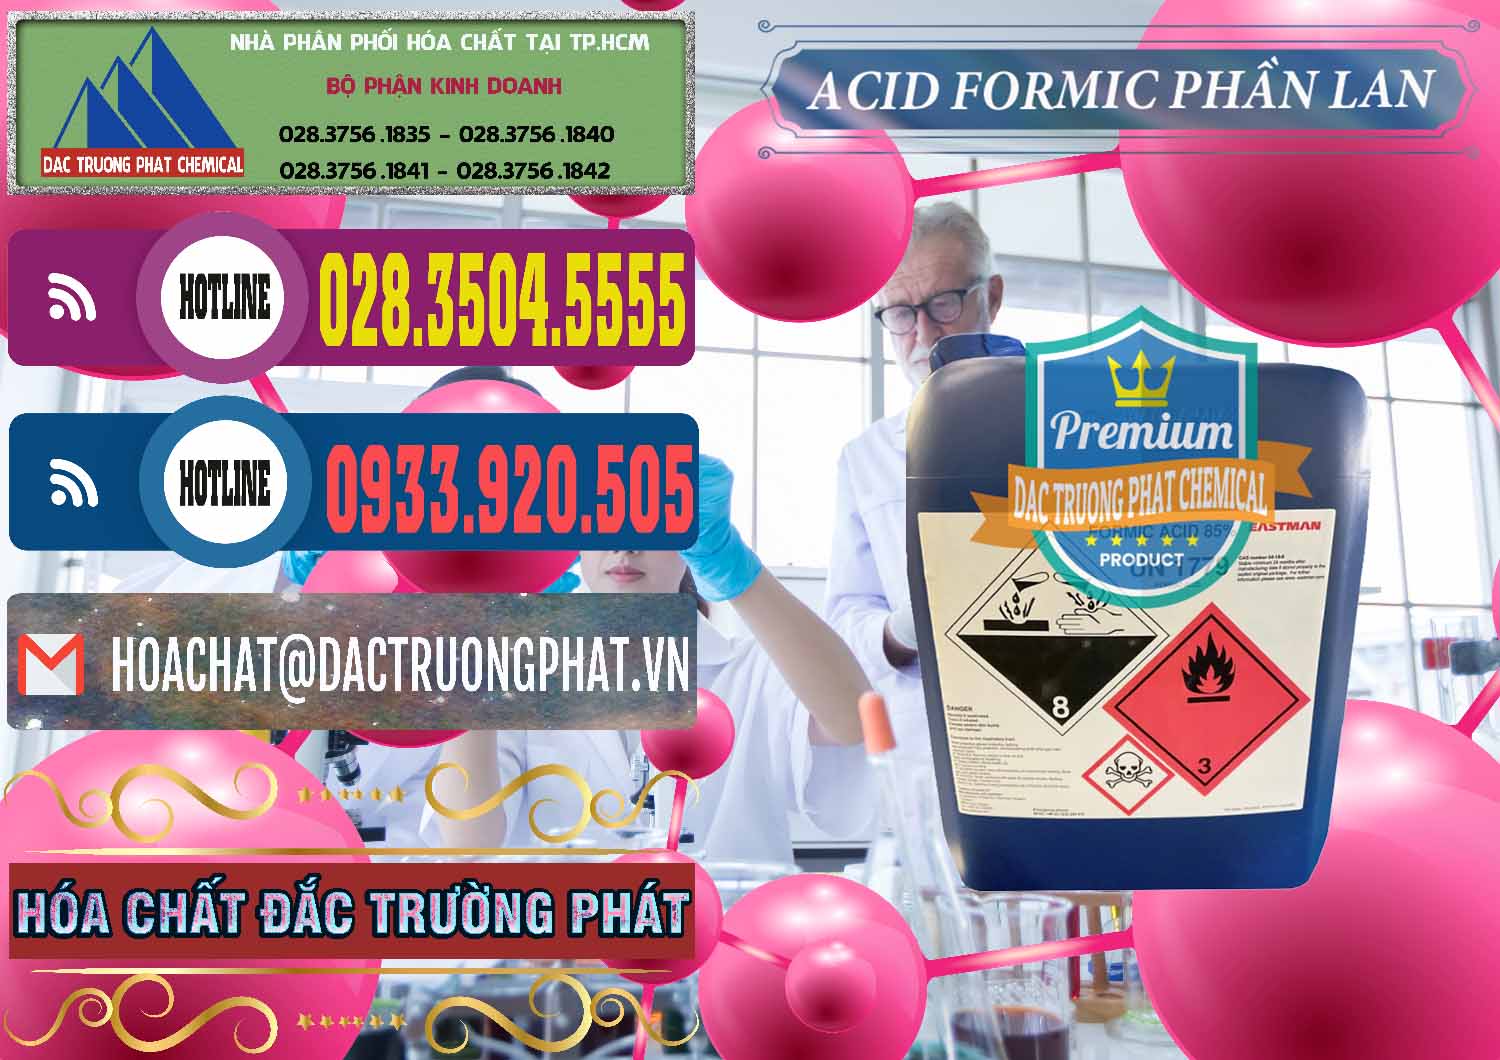 Nơi chuyên cung ứng _ bán Acid Formic - Axit Formic Phần Lan Finland - 0376 - Nơi cung cấp và bán hóa chất tại TP.HCM - muabanhoachat.com.vn